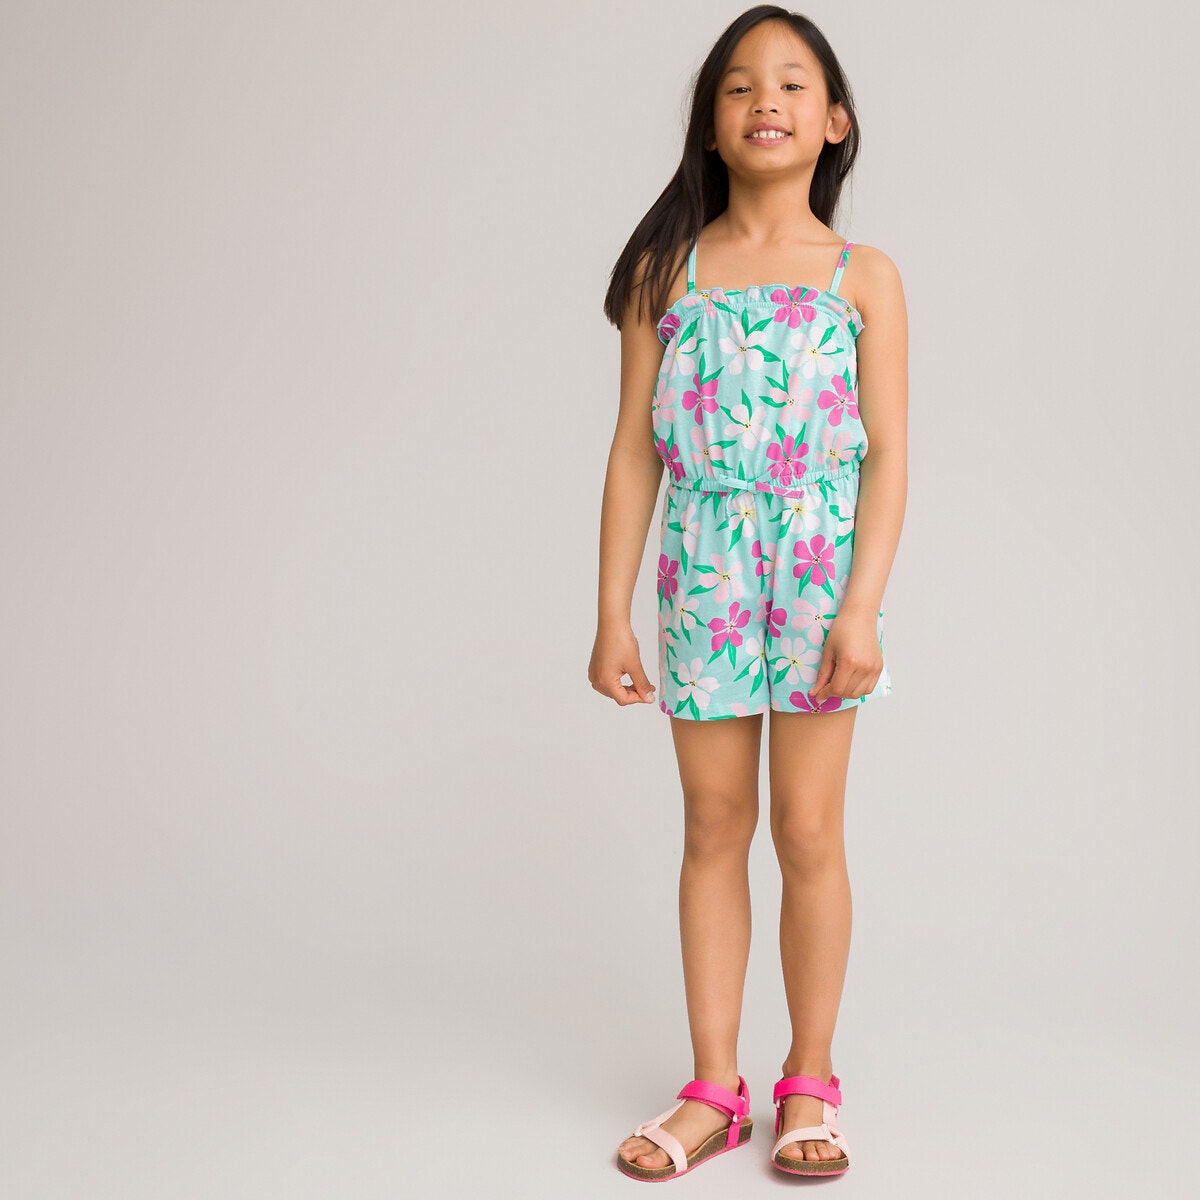 ΠΑΙΔΙ | Παντελόνια | Ολόσωμες Φόρμες Ολόσωμη φόρμα-σορτς από οργανικό βαμβάκι με λεπτές τιράντες, 3-12 ετών